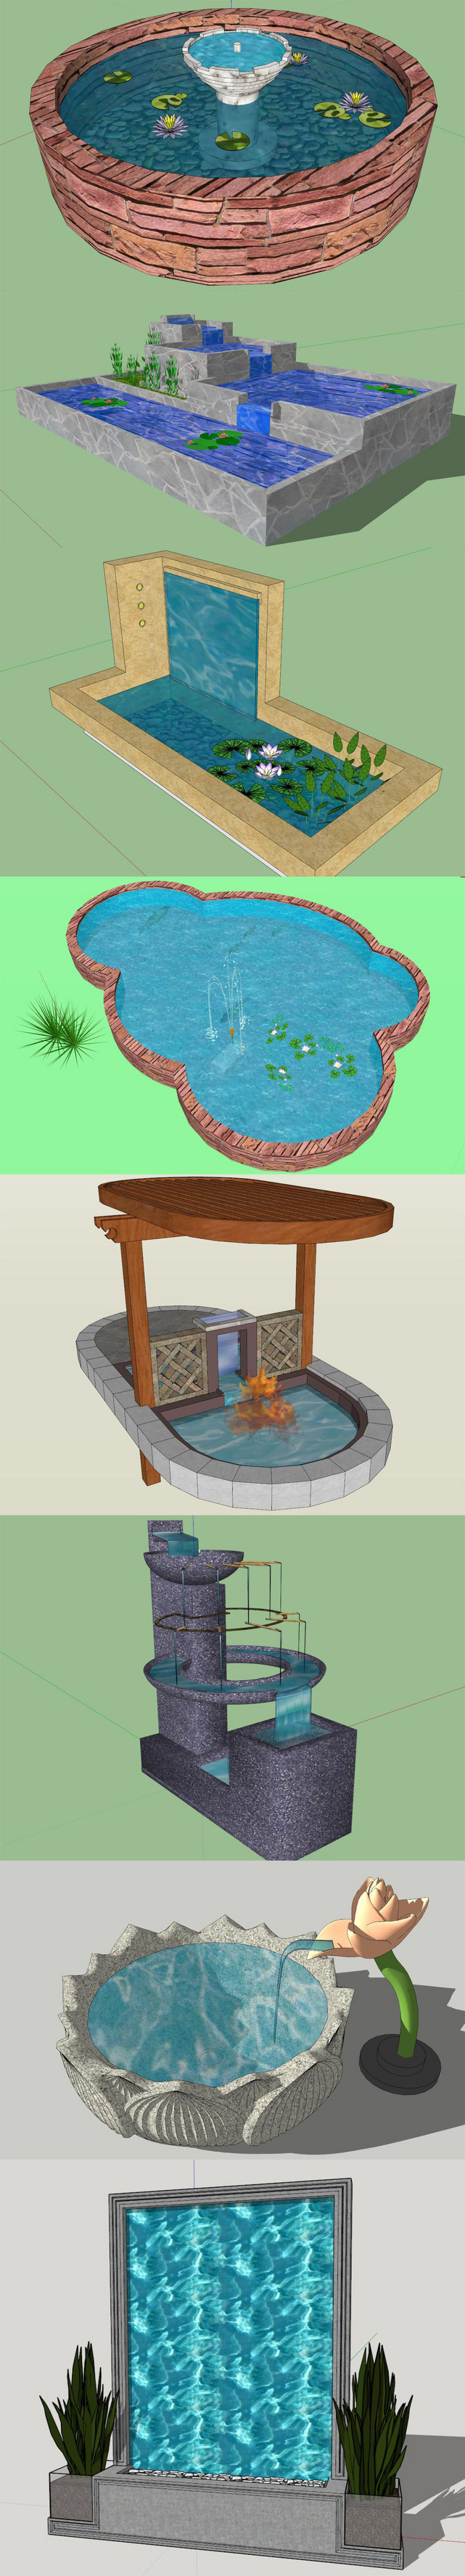 水景墙流瀑荷花池塘su模型设计图下载(图片17.27mb)